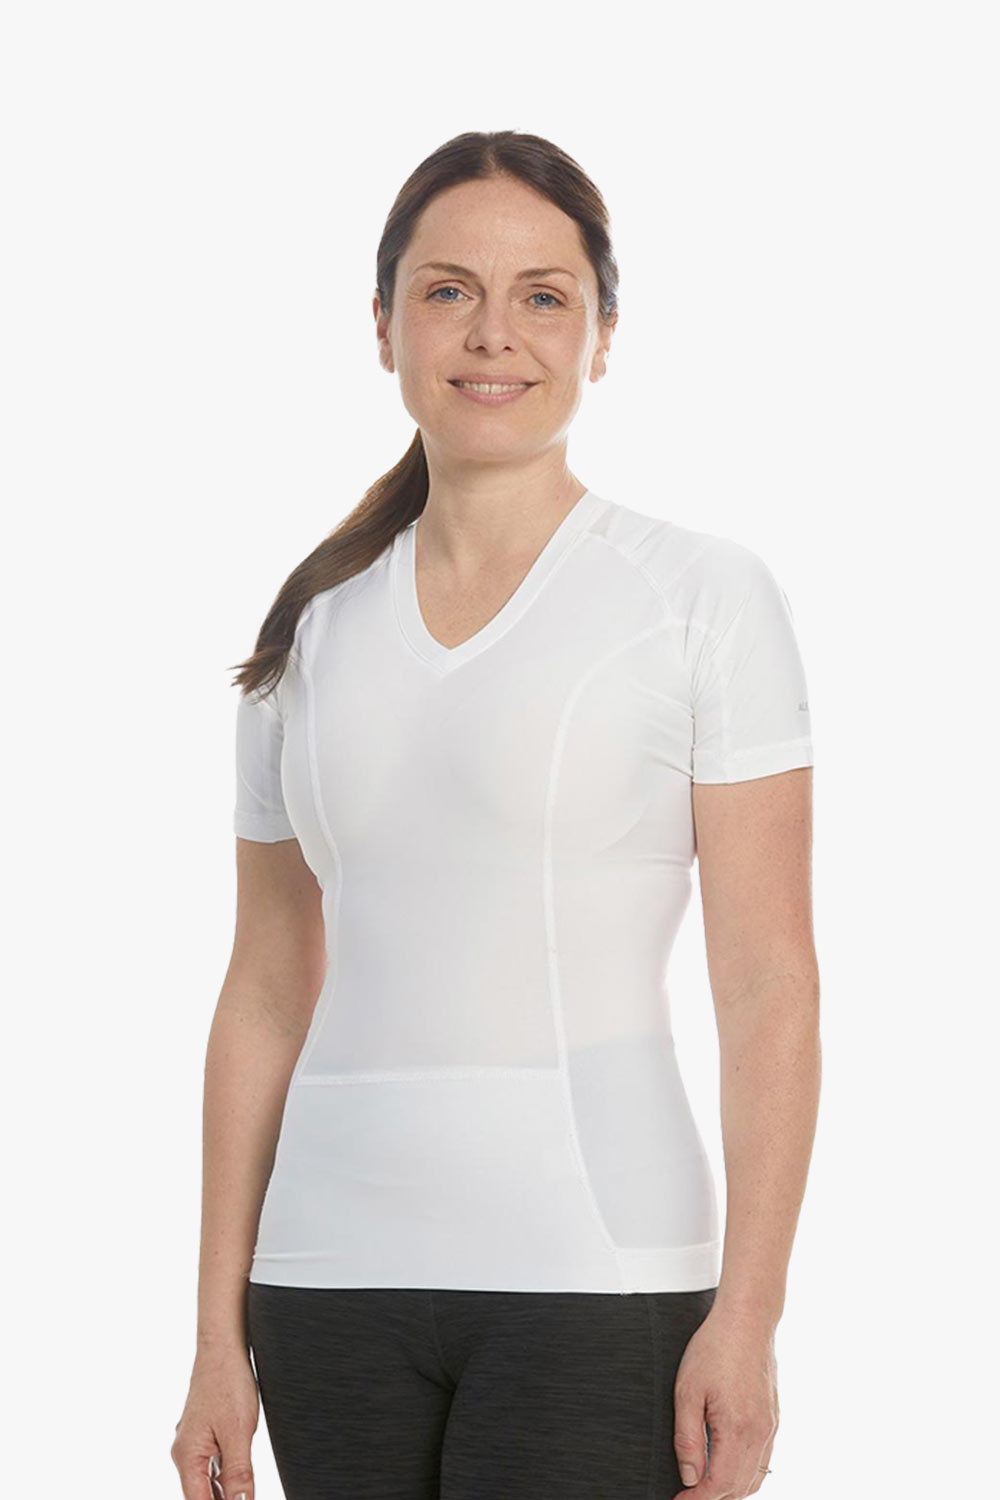 Shirt zur Haltungskorrektur in weiß von anodyne